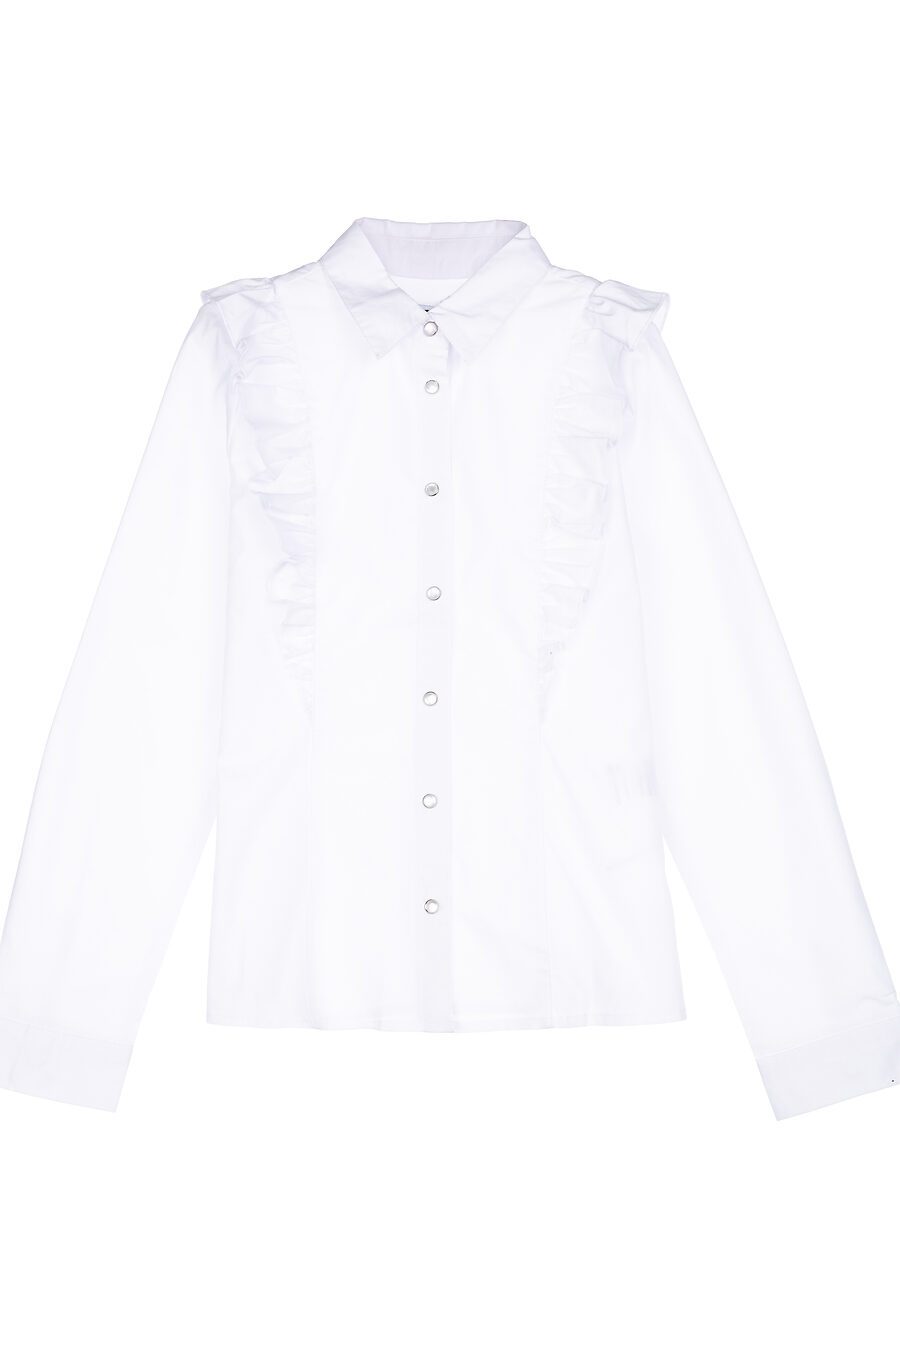 Блуза PLAYTODAY (785752), купить в Moyo.moda